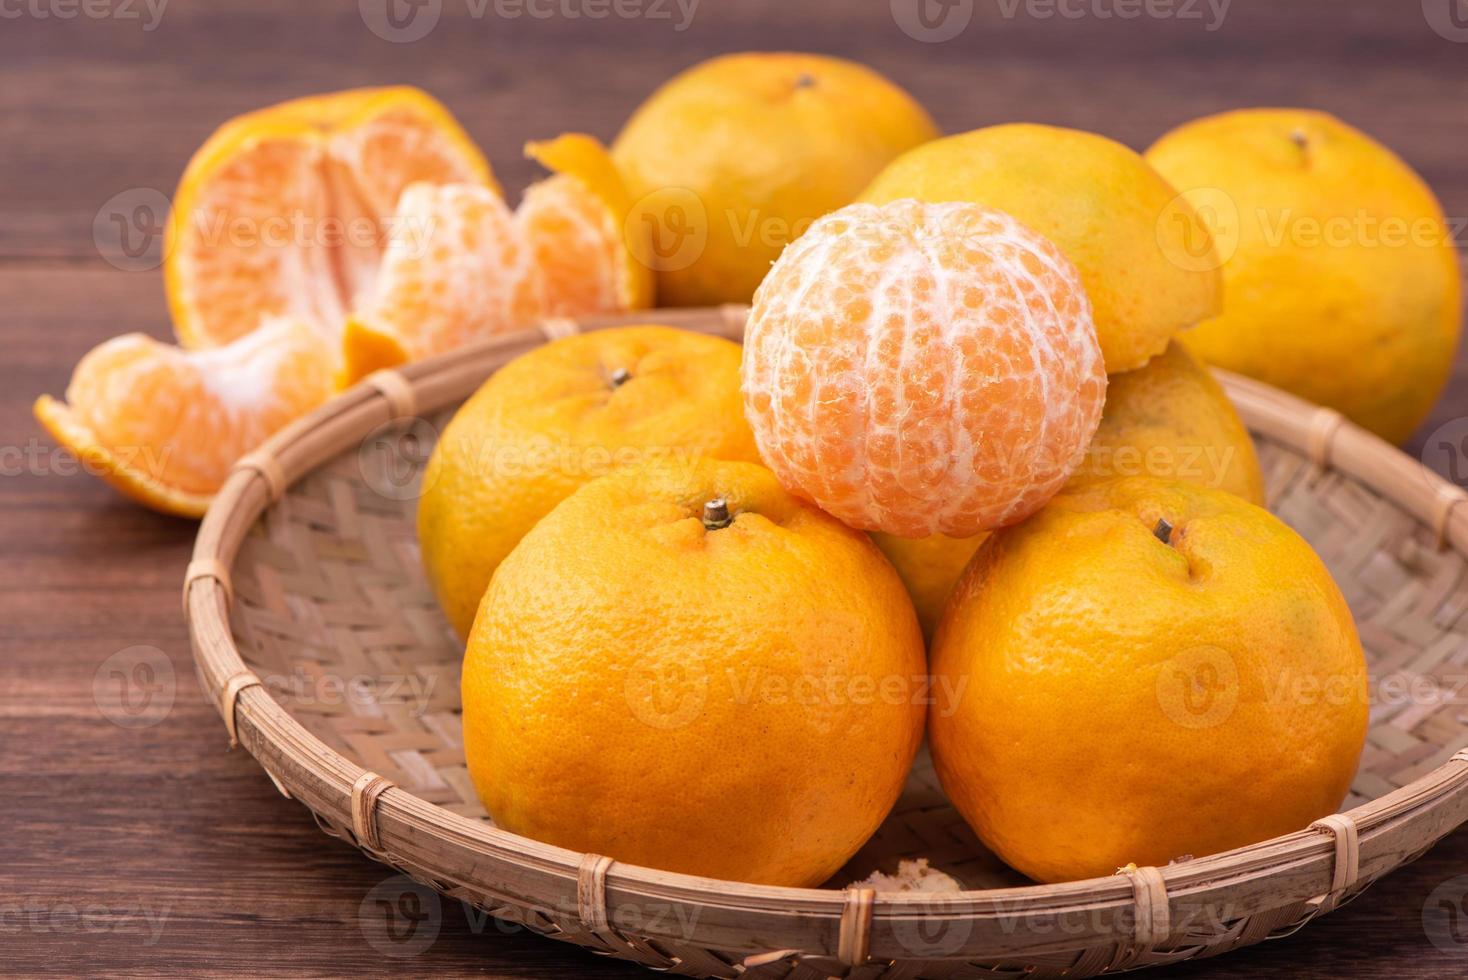 fresca, linda tangerina de cor laranja na peneira de bambu sobre a mesa de madeira escura. fruta sazonal e tradicional do ano novo lunar chinês, close-up. foto